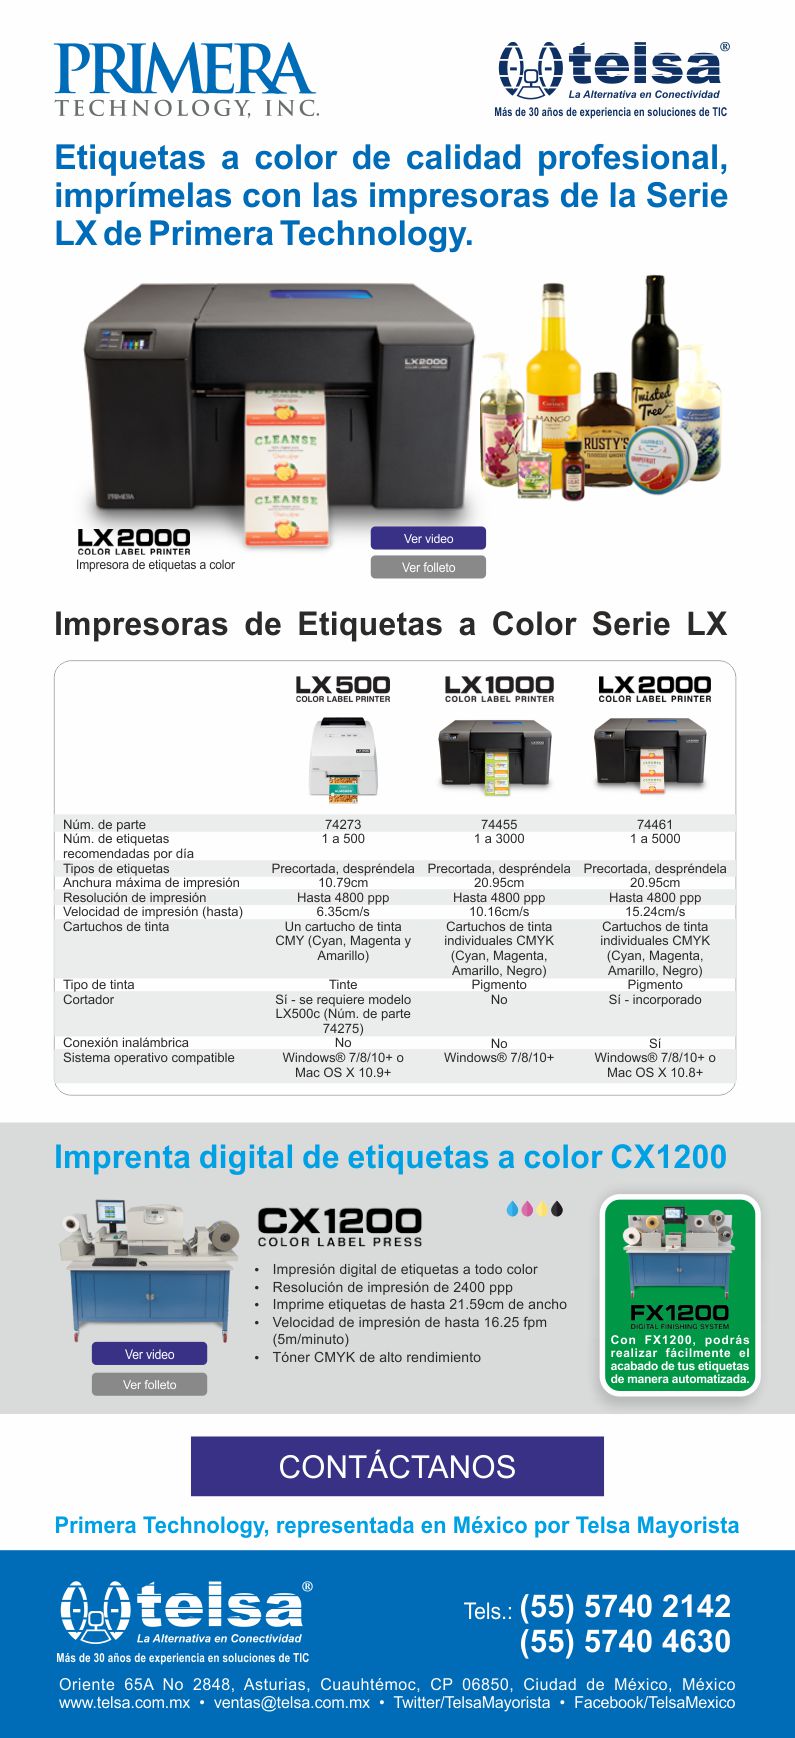 Etiquetas a color de calidad profesional, imprímelas con las impresoras de la Serie LX de Primera Technology